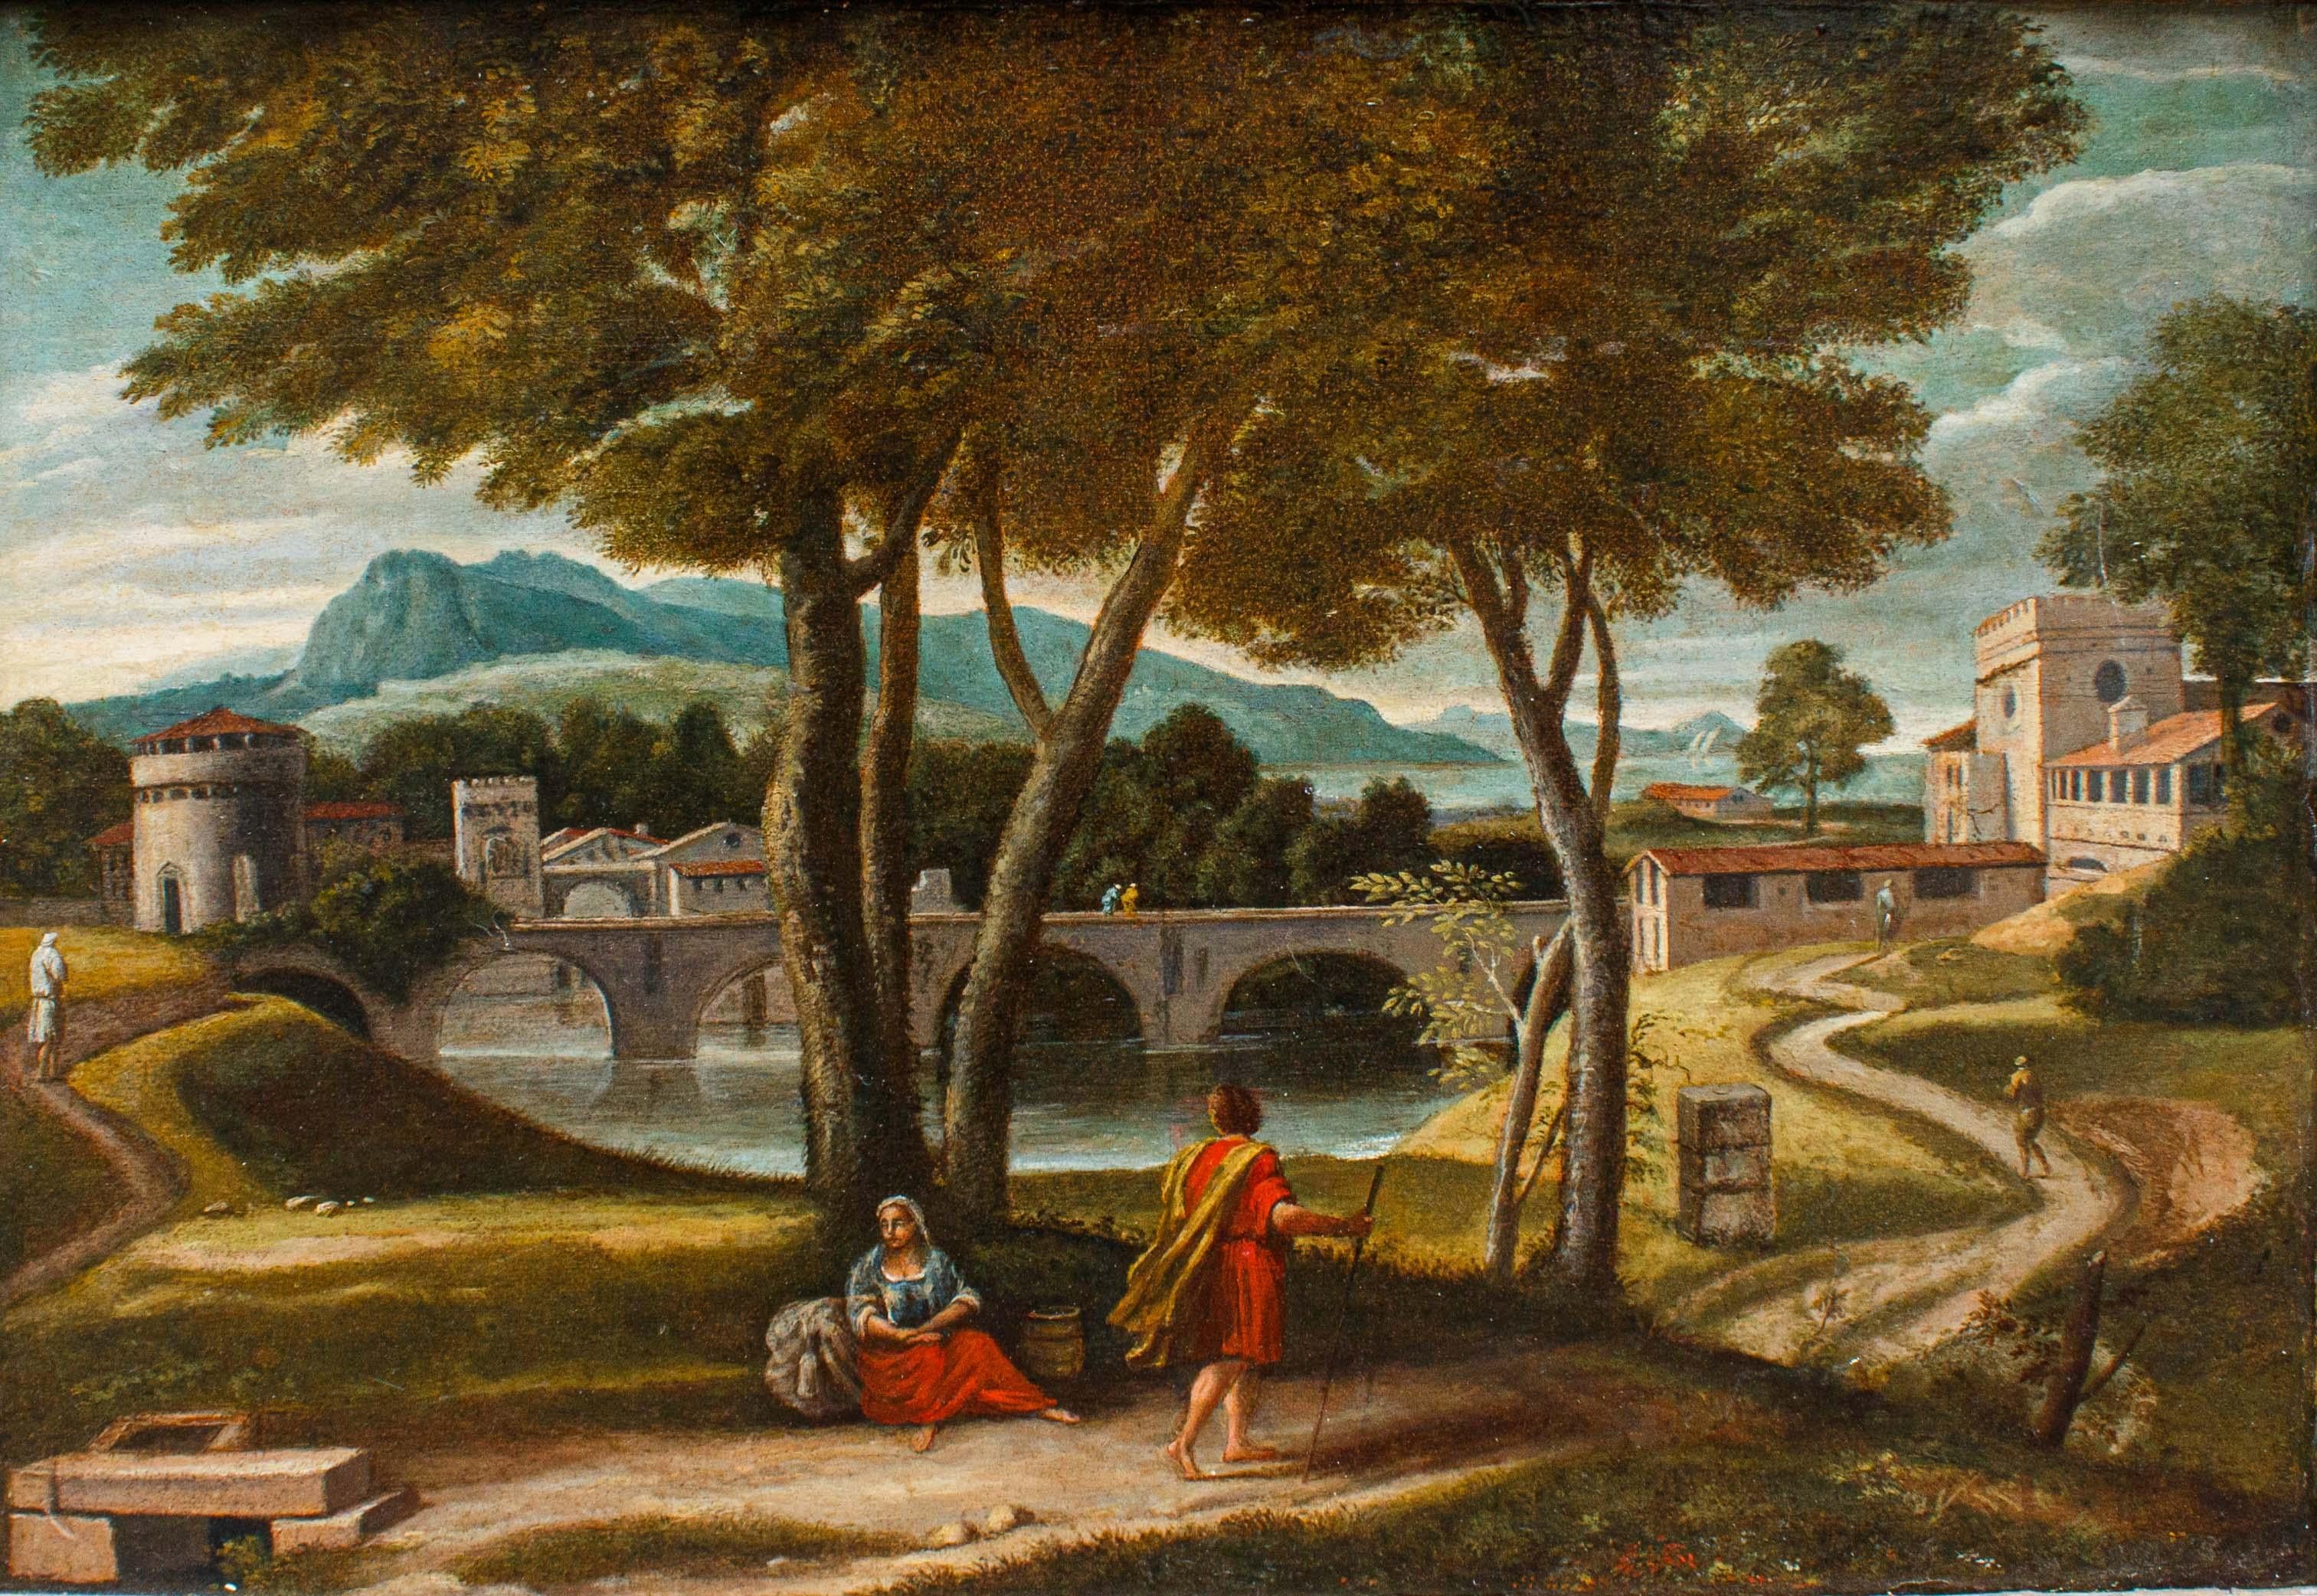 Römische Schule des 17. Jahrhunderts

Landschaft mit Brücke - Christus und die samaritanische Frau am Brunnen

Öl auf Leinwand, cm 42 x 59,5 - Mit Rahmen, cm 54, 5 x 71 cm 

Die kleine Leinwand zeigt einen weiten Blick auf die Stadt, umgeben von